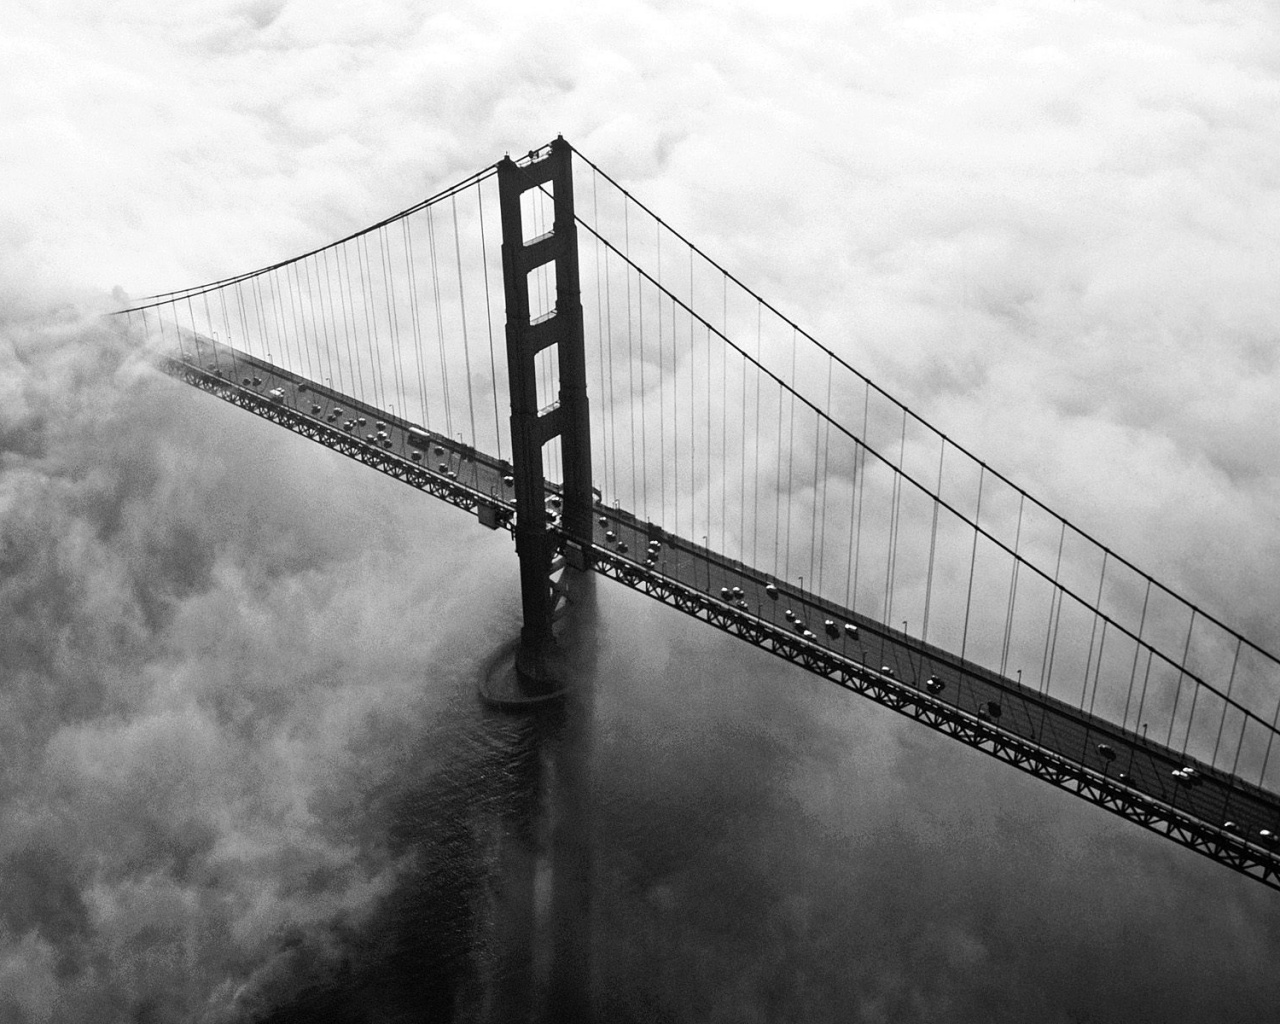 Мост Золотые ворота утопает в тумане обои